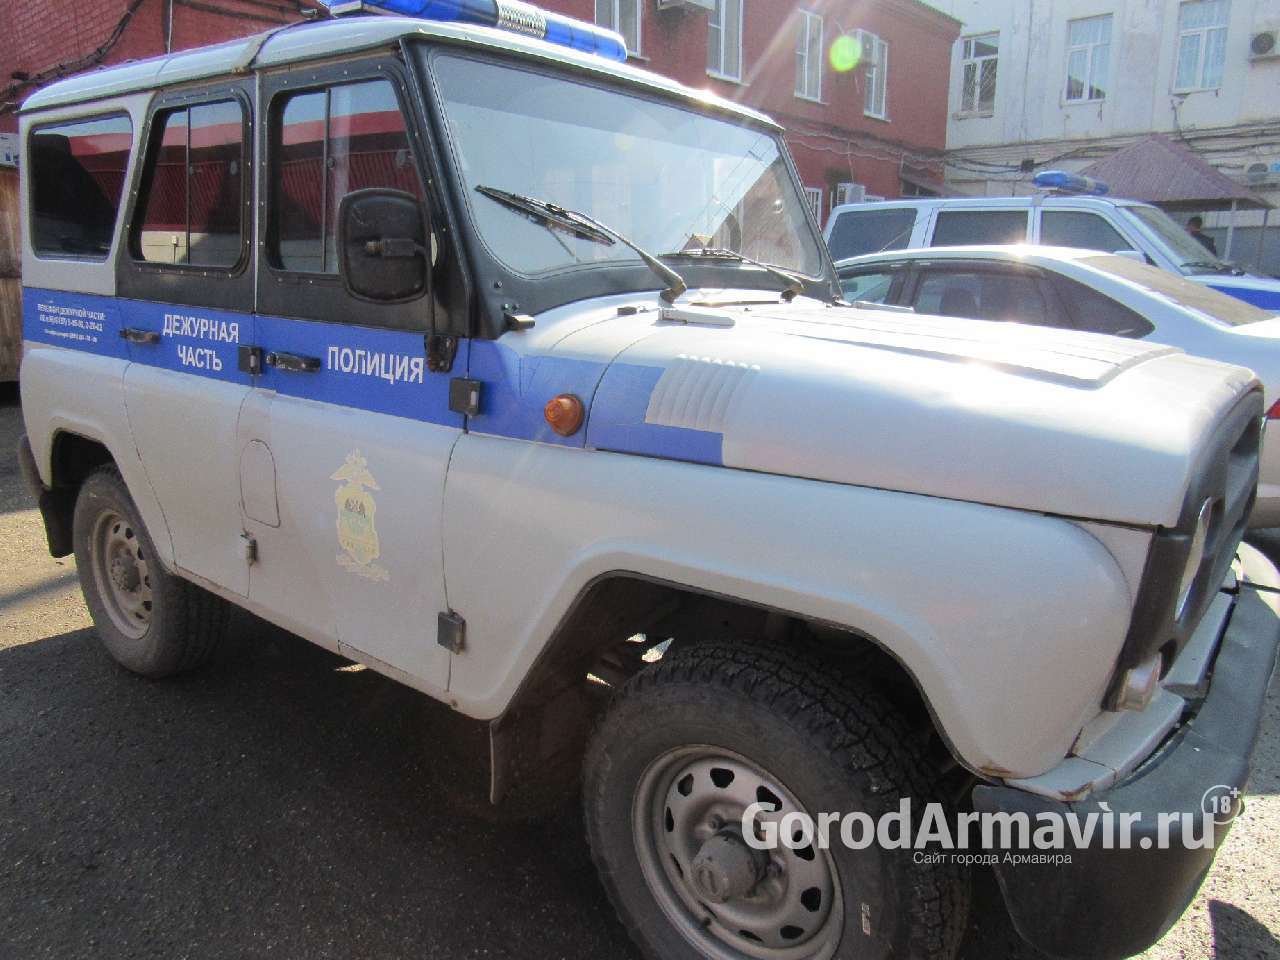 В Армавире полицейские привлекли к административной ответственности 21 бывшего осужденного 